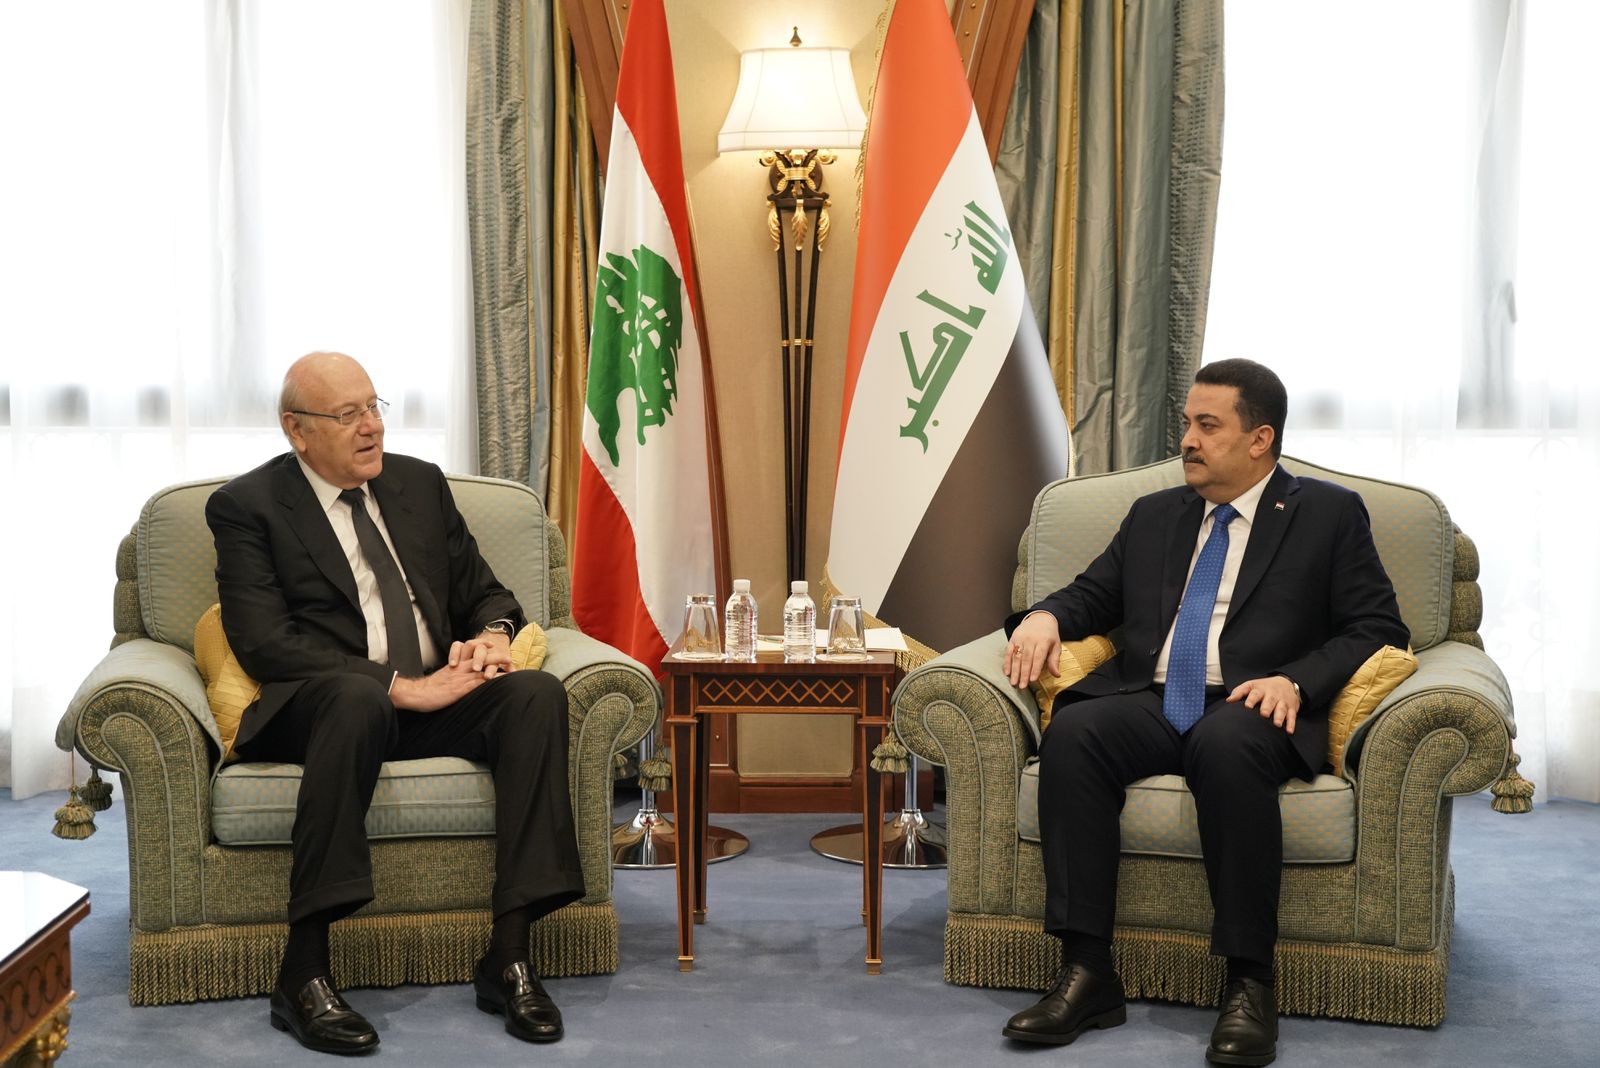 Al-Sudani to visit Beirut soon: Lebanon's PM Mikati says